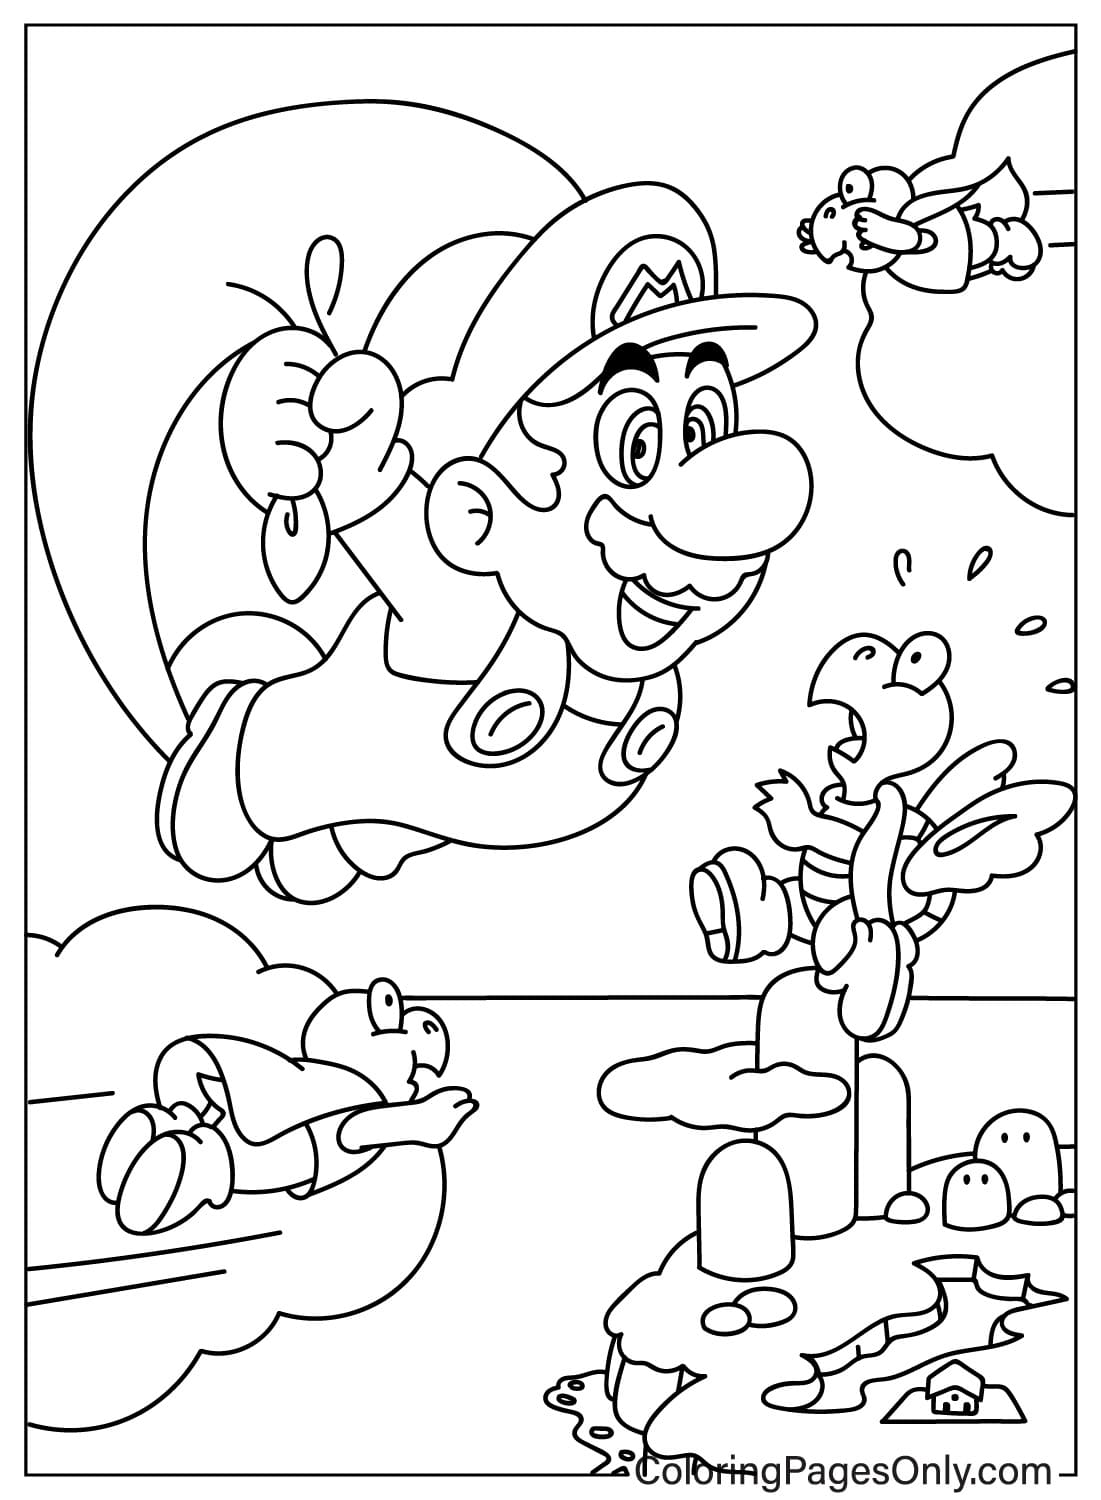 Ausmalbilder Mario und Koopa Troopa